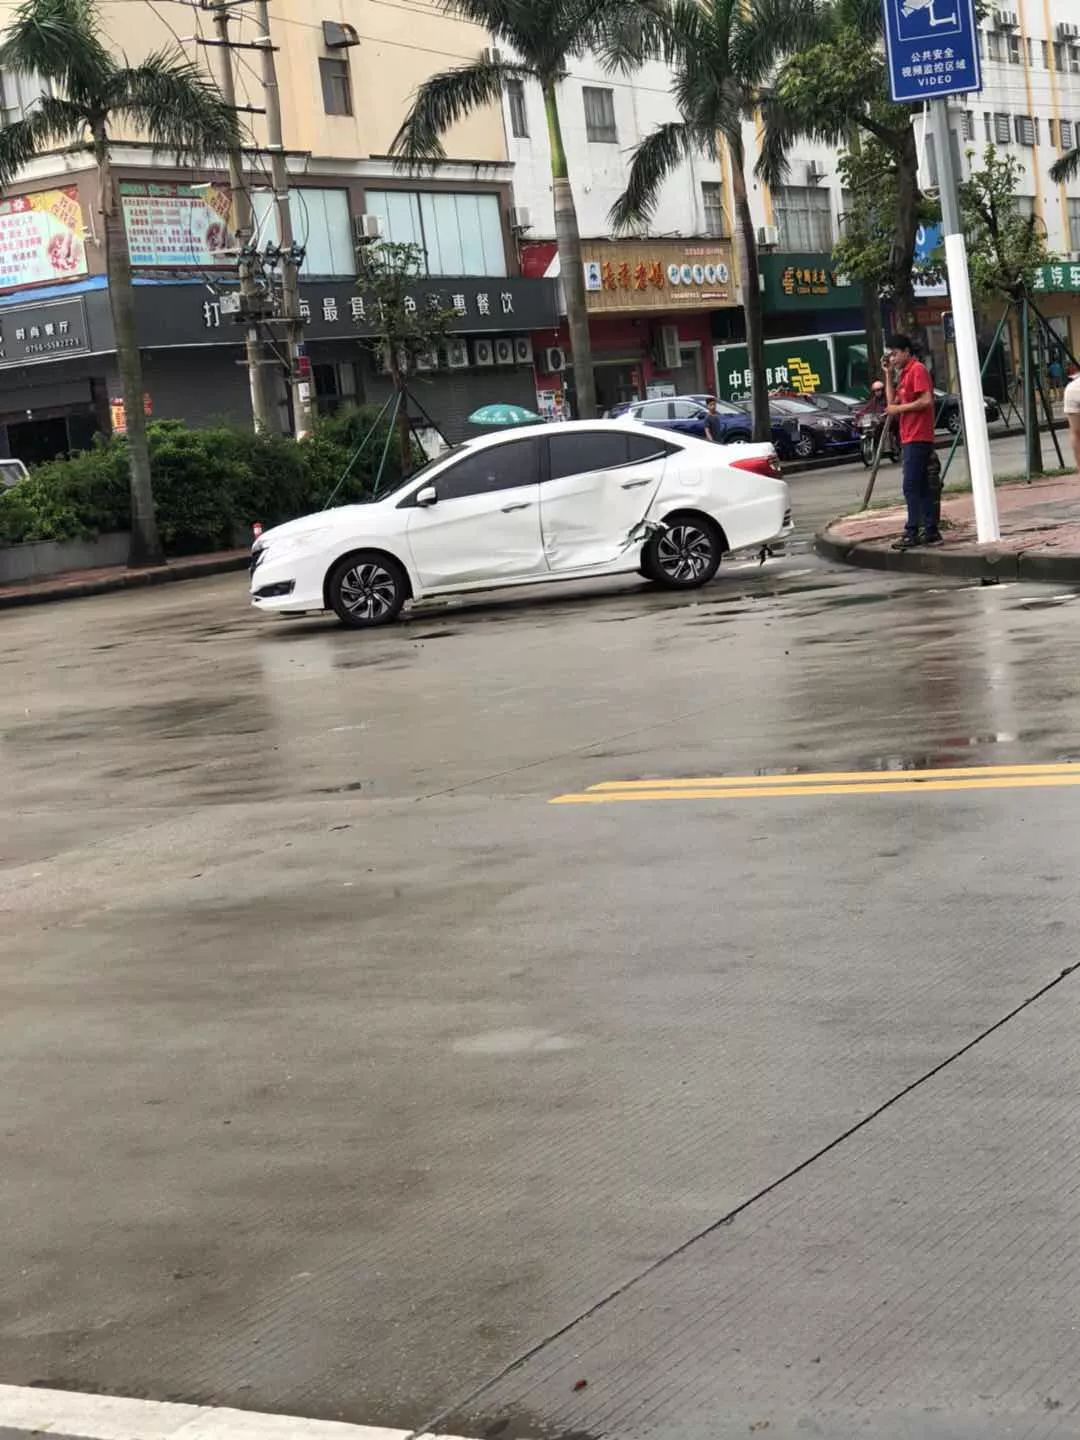 今天,下午4:15分 在斗门新青二路发生一起车祸 两辆小车发生碰撞 白色